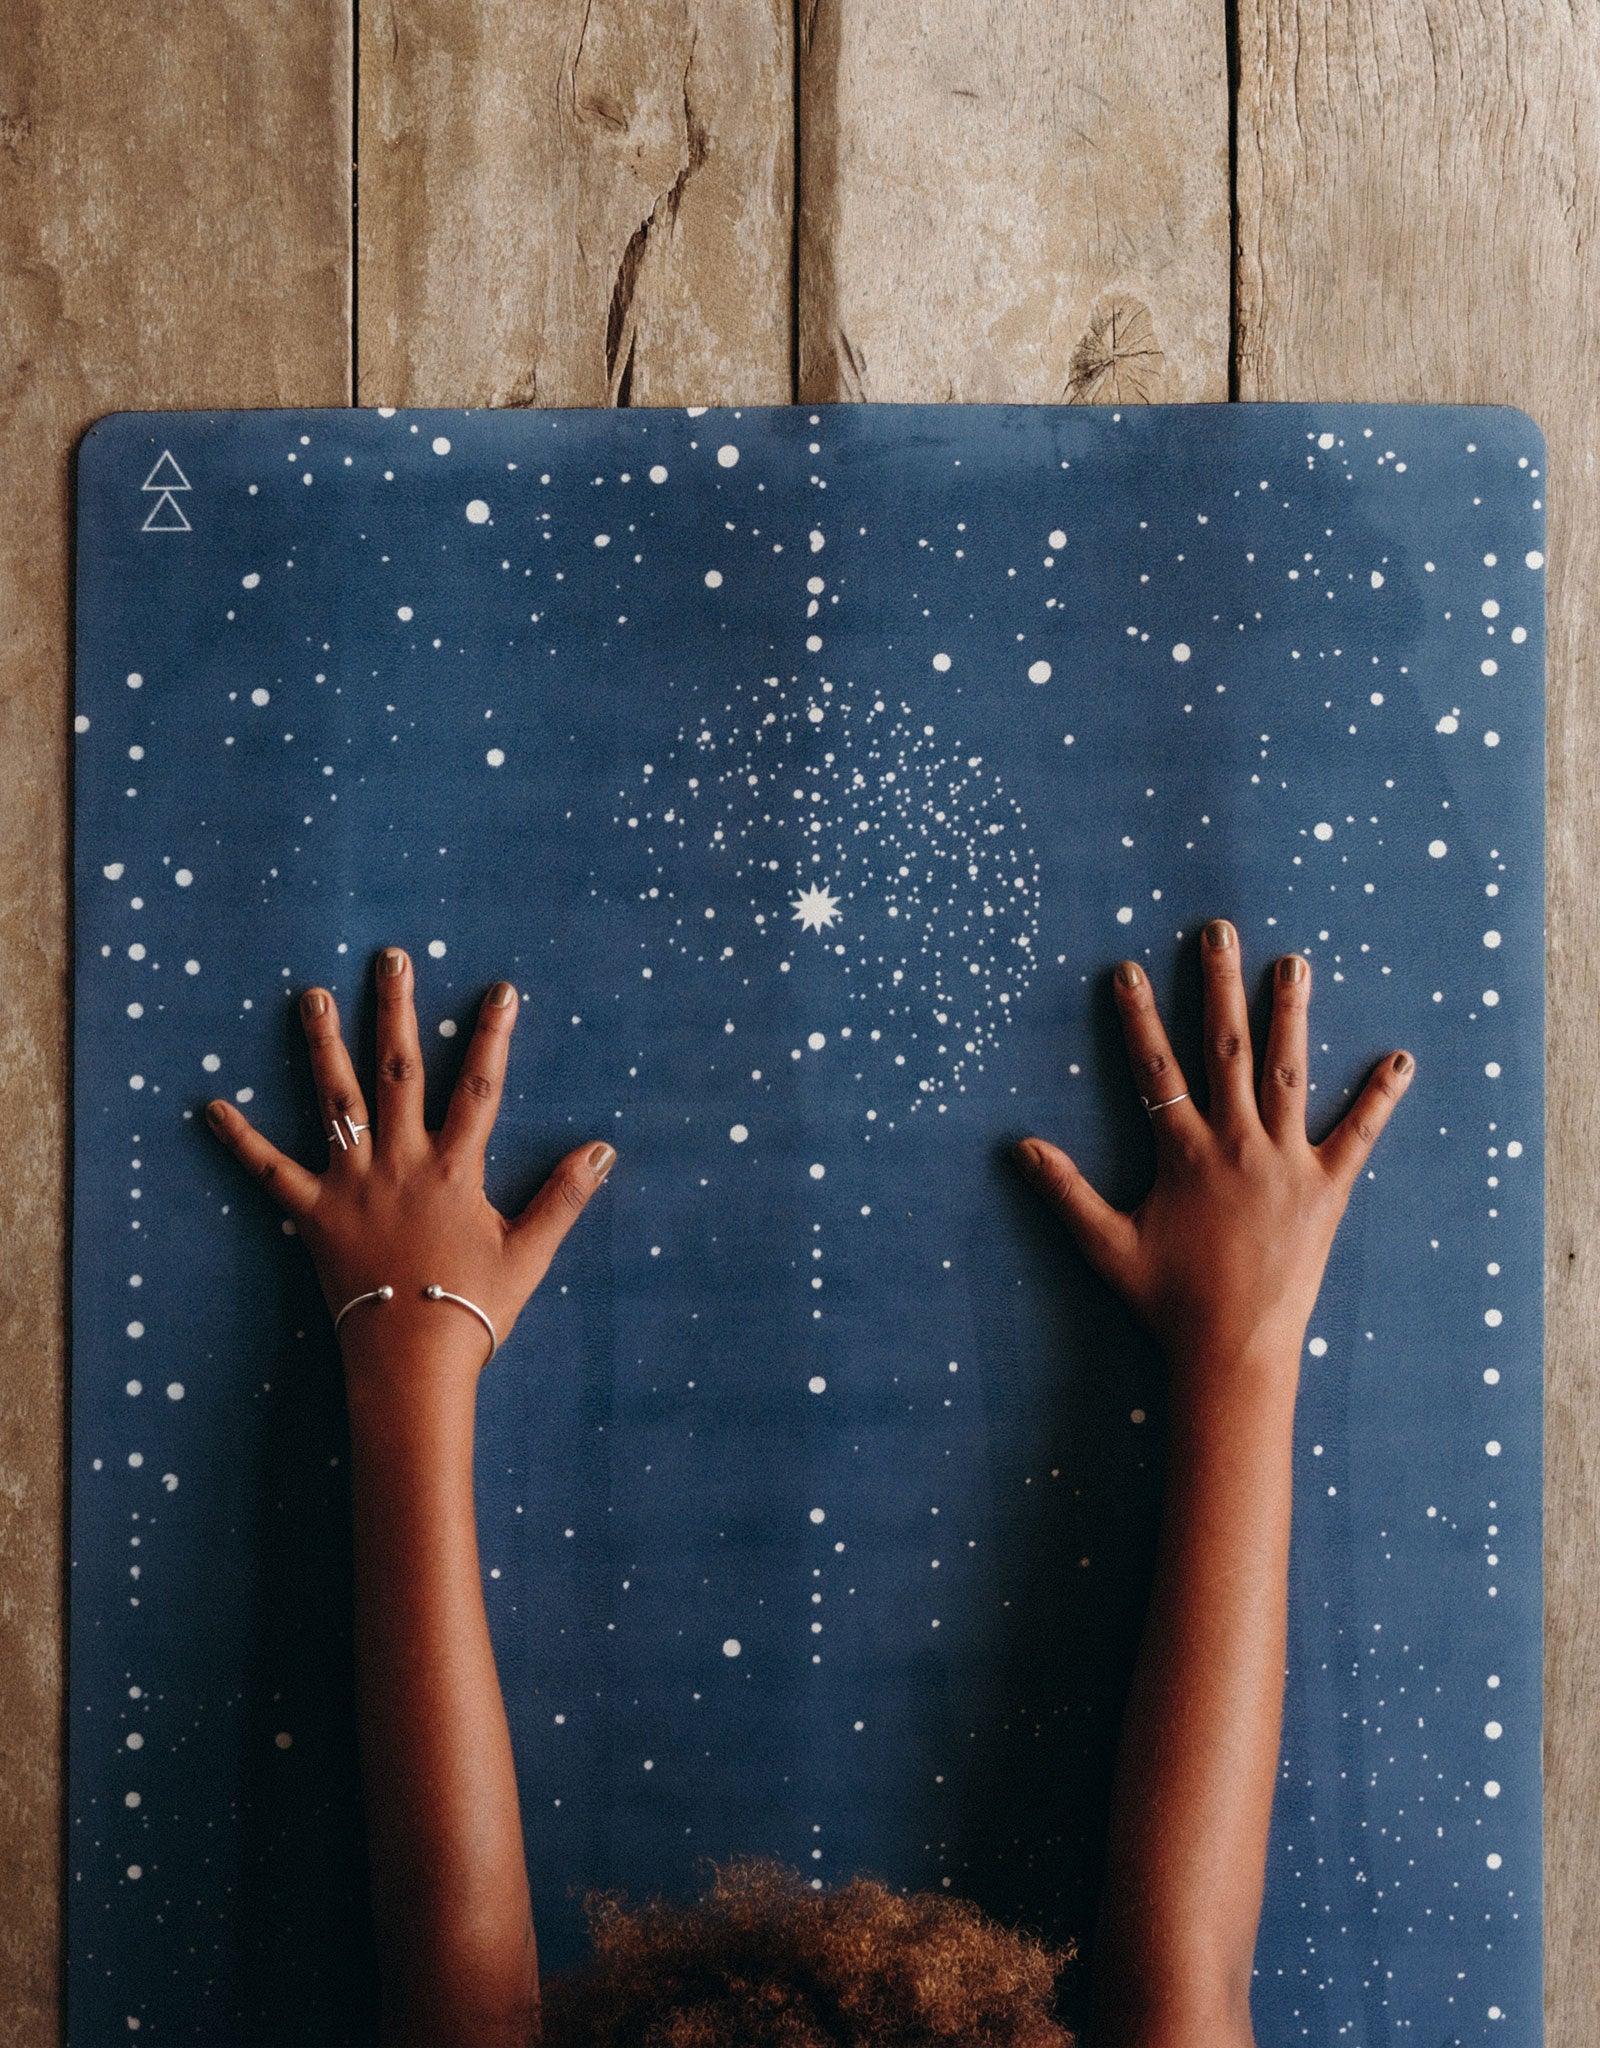 Combo Yoga Mat: 2-in-1 (Mat + Towel) - Celestial - Lightweight, Ultra-Soft